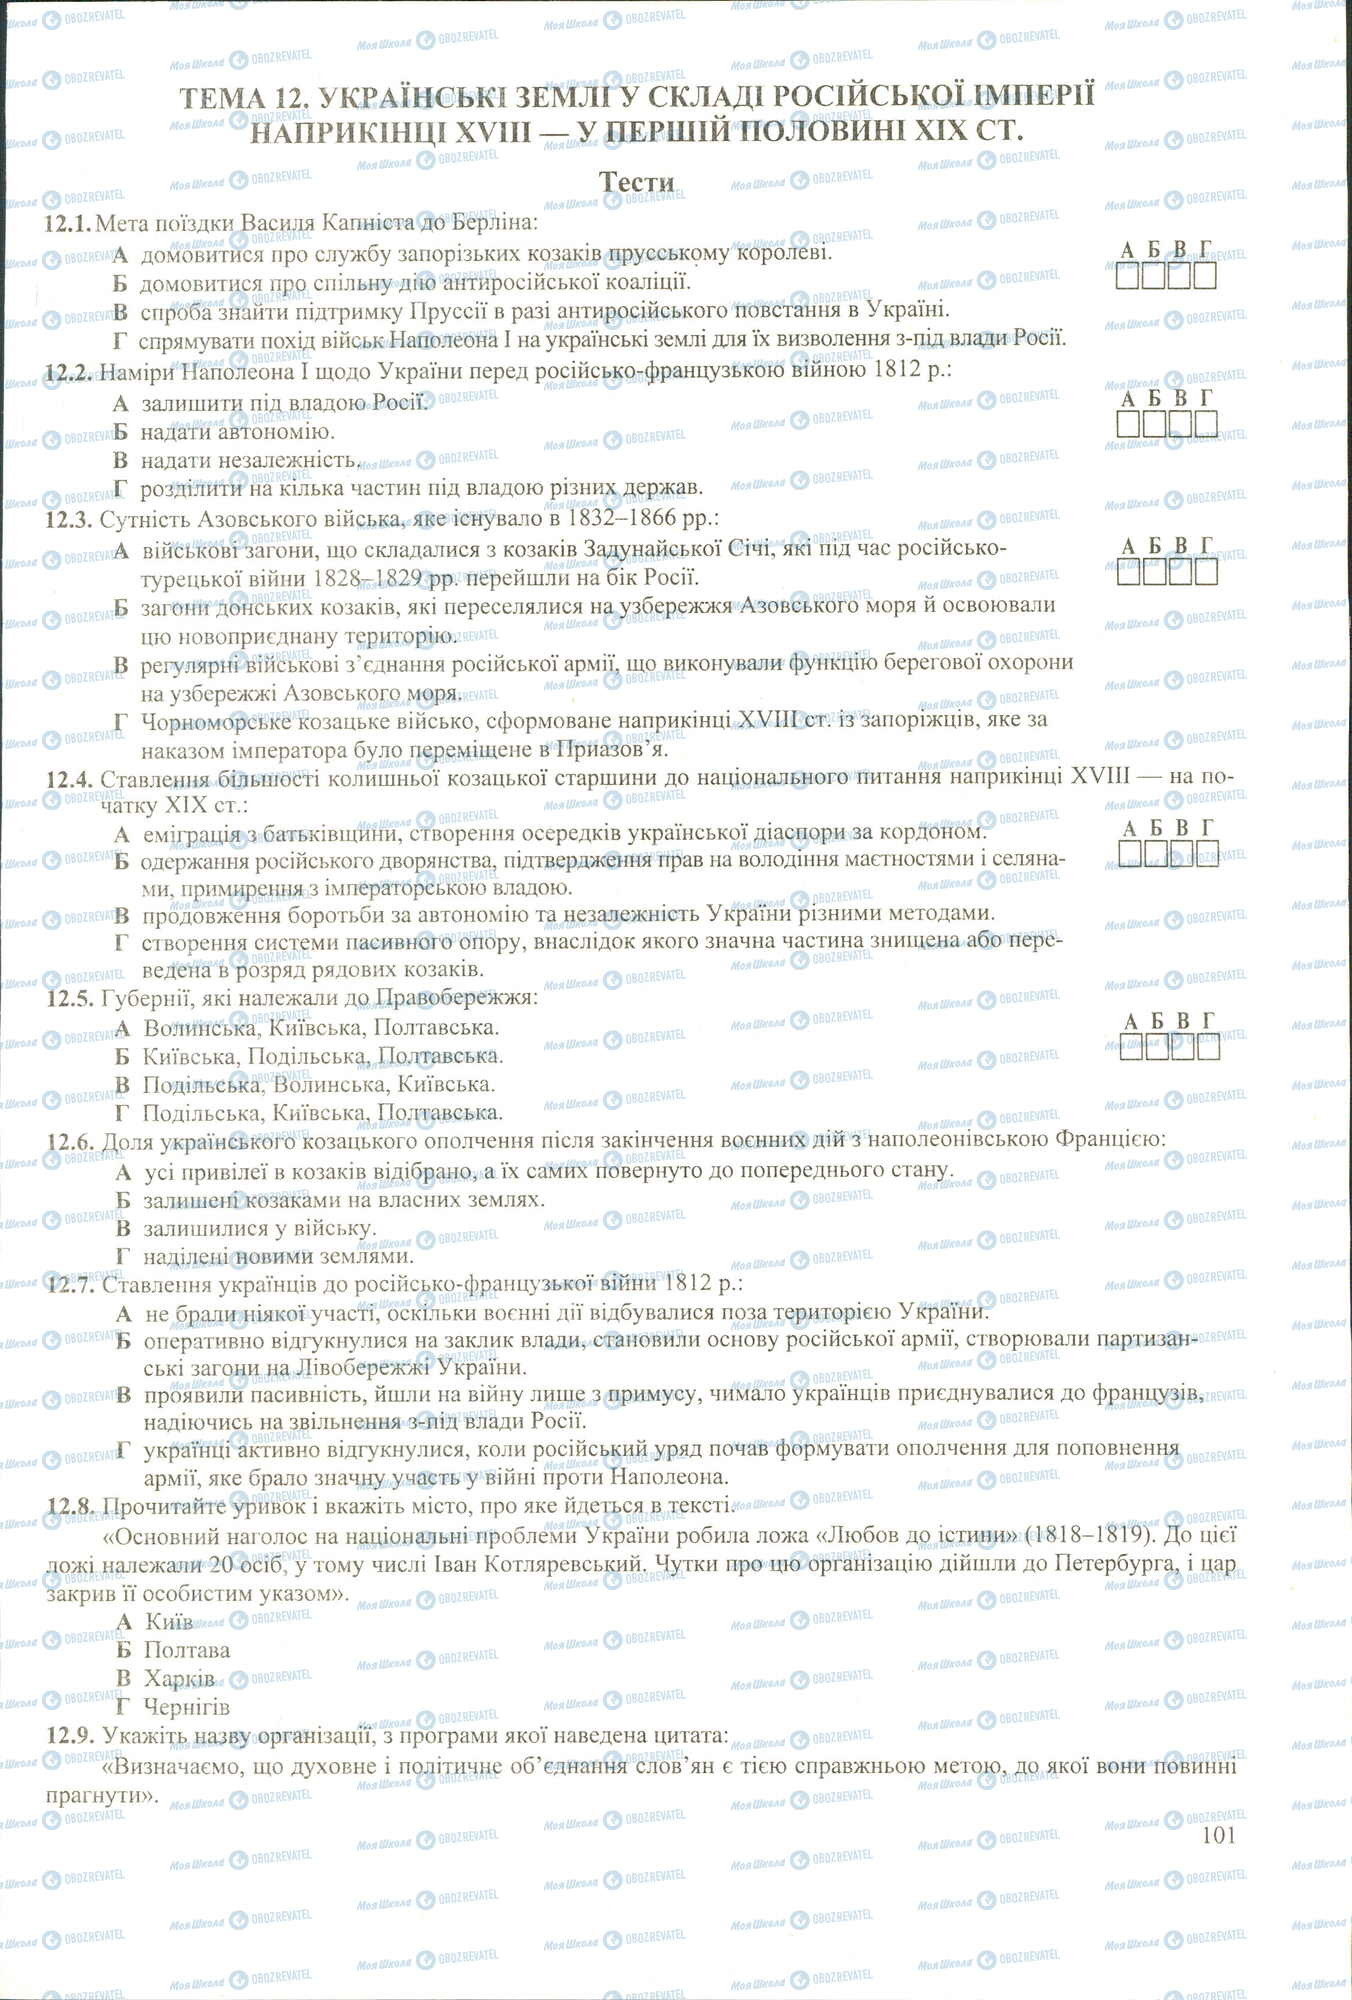 ЗНО История Украины 11 класс страница 1-9